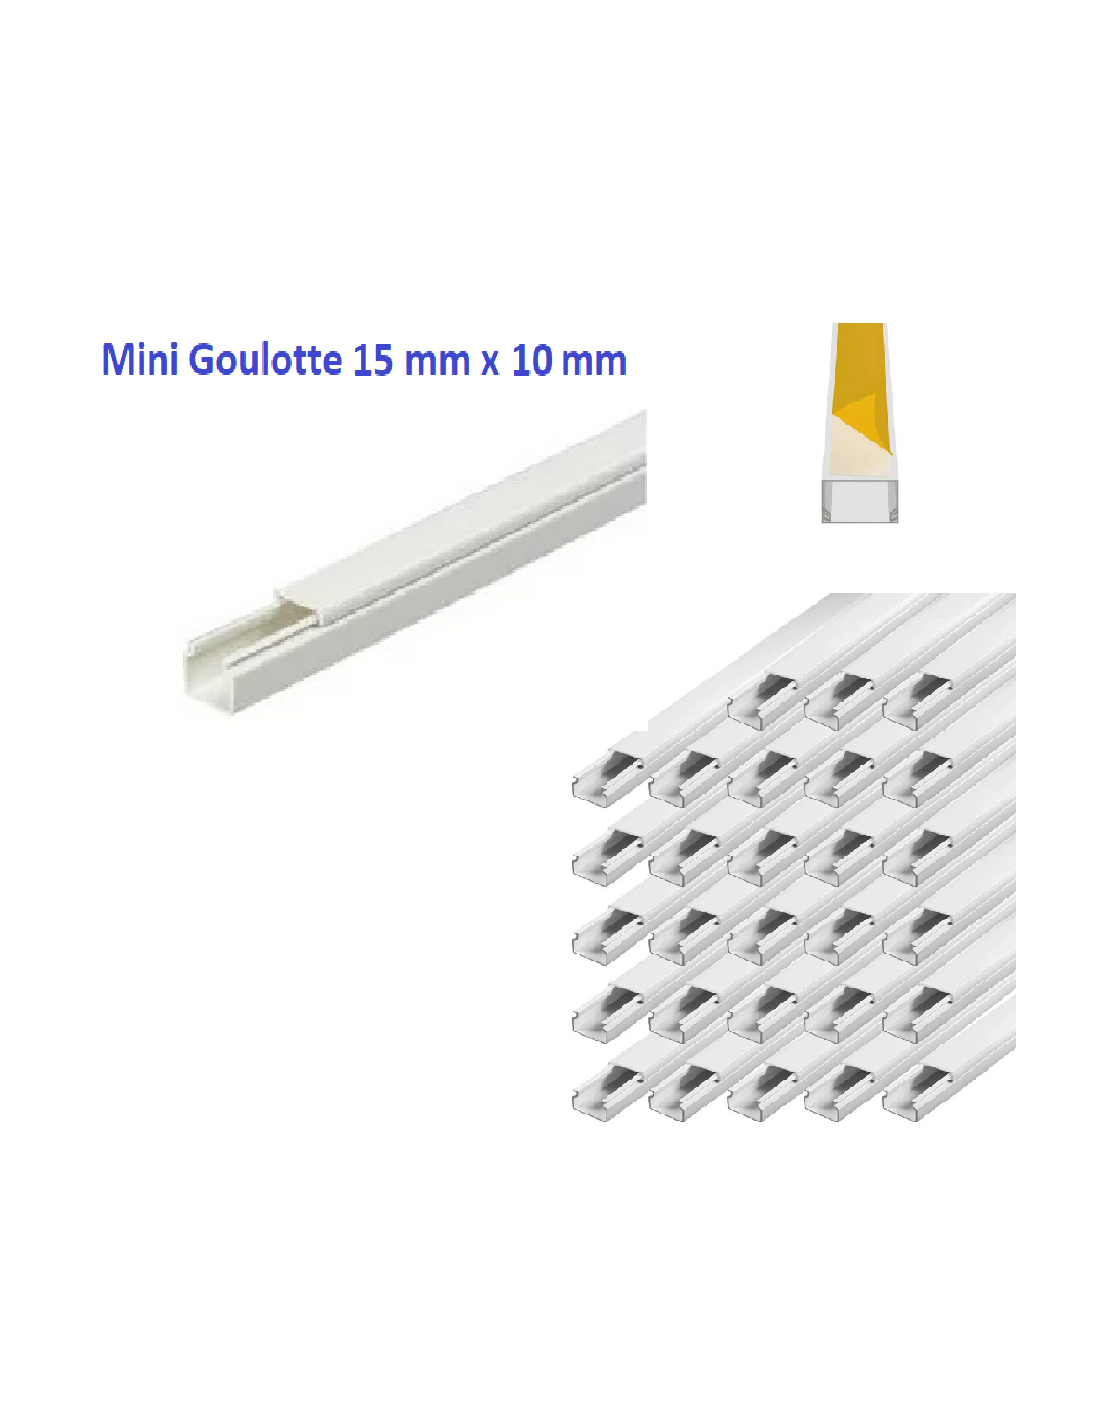 28 m Mini Goulotte moulure électrique PVC 15 mm x 10 mm Blanc -Autocollante  - longueur 1 m ( soit 1,28 € ttc le m )